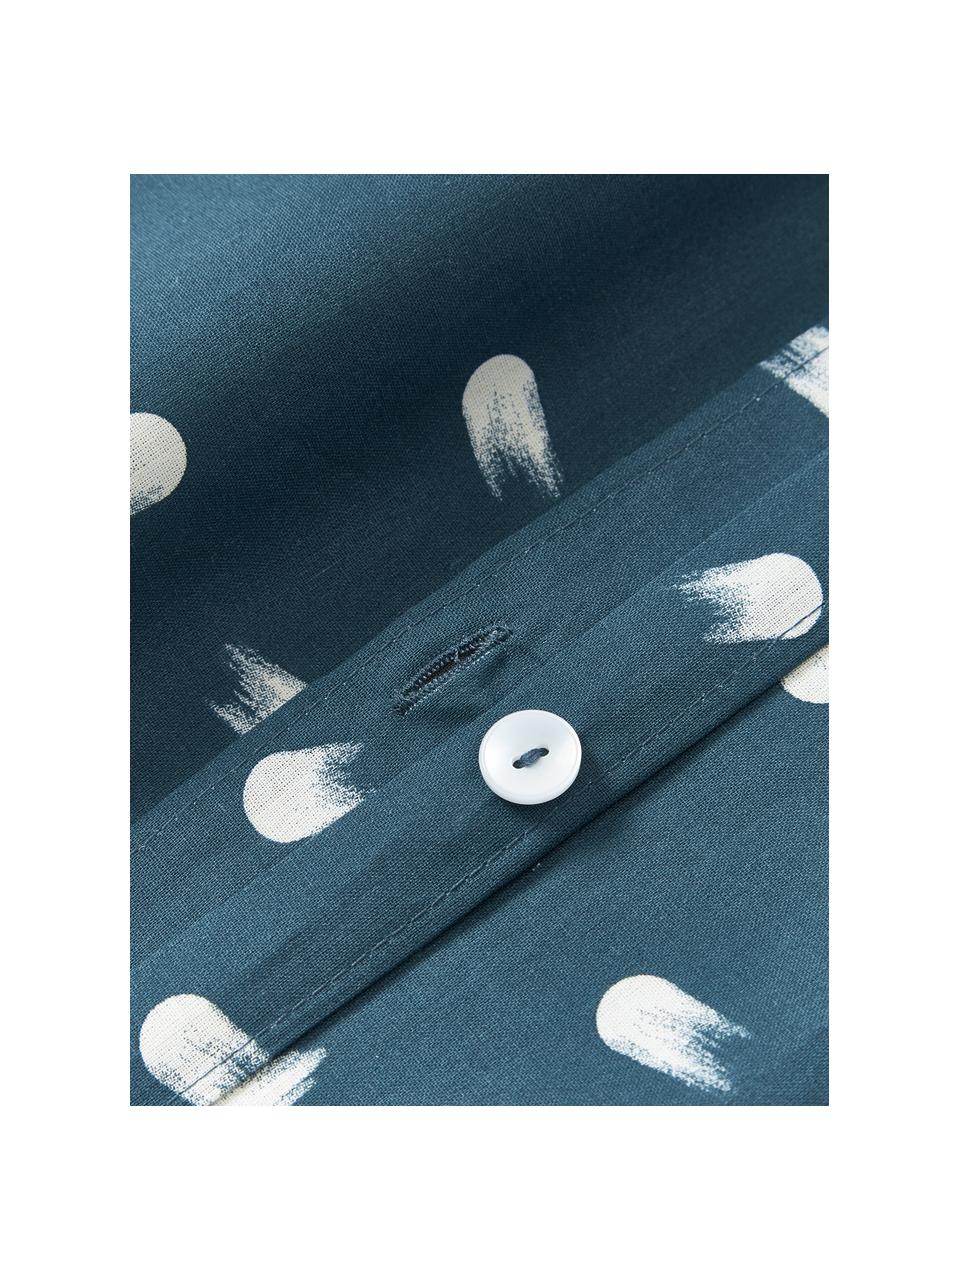 Poszwa na kołdrę z bawełny Amma, Niebieski, S 135 x D 200 cm